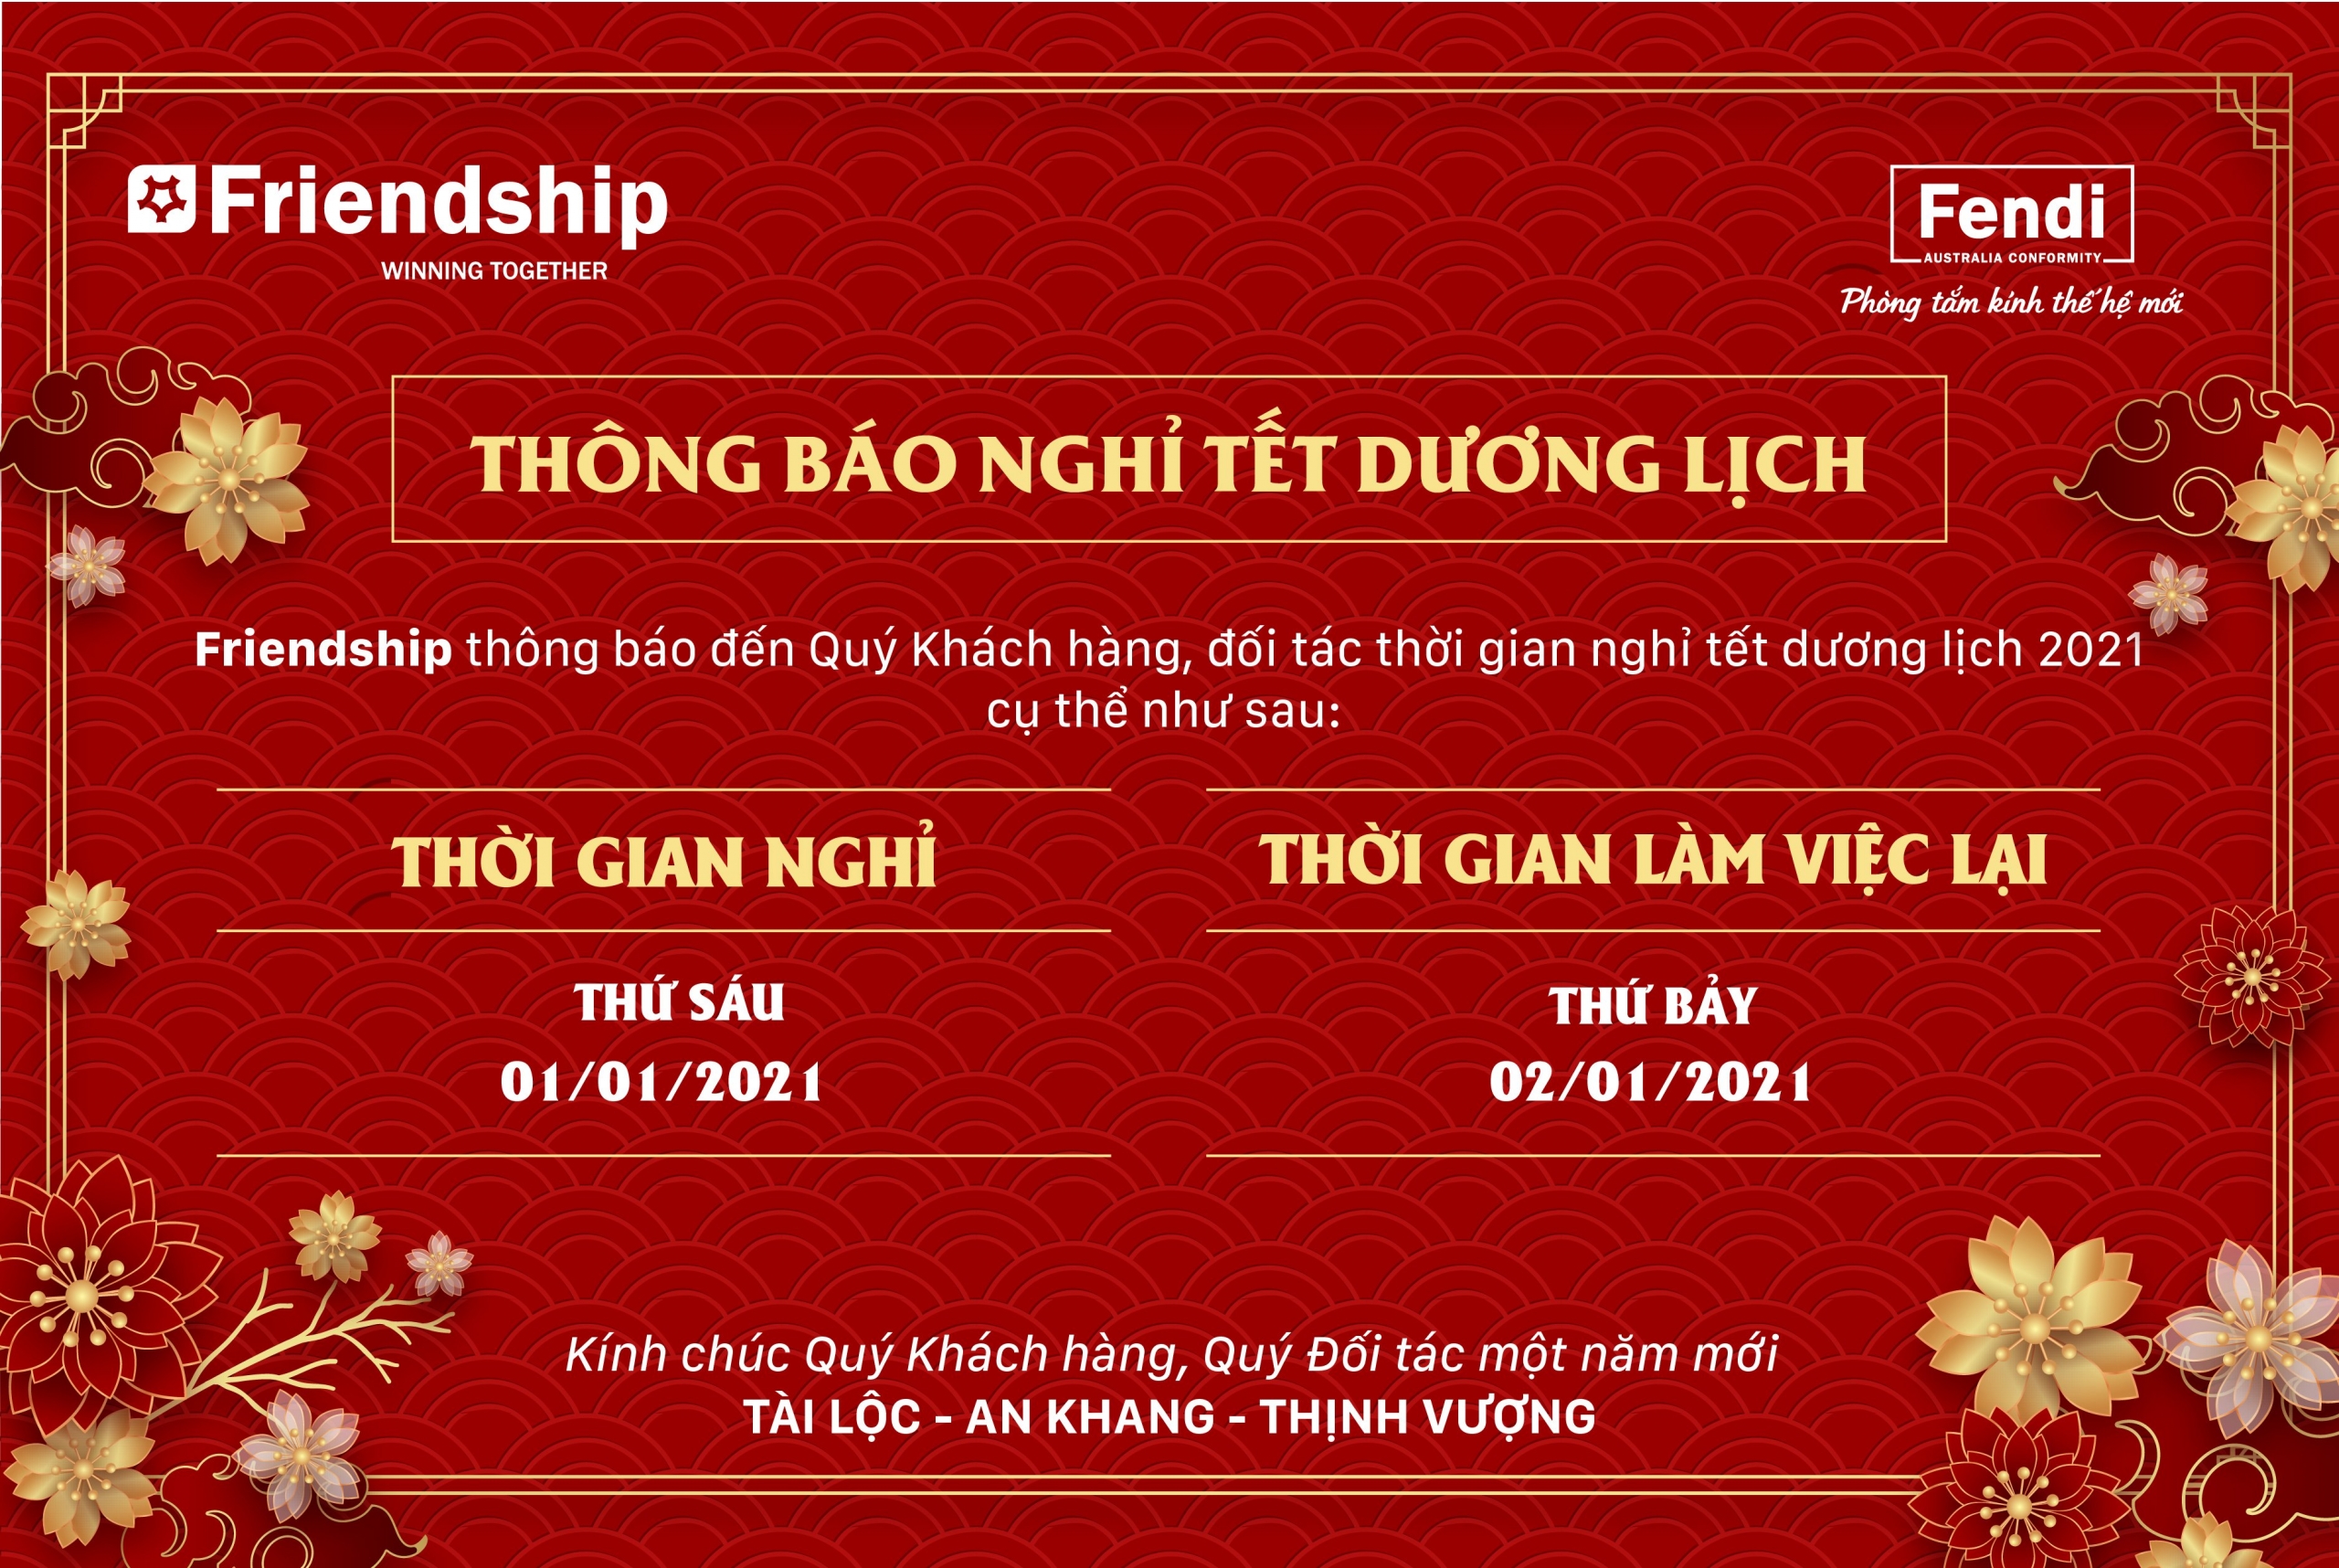 thong-bao-nghi-tet-duong-lich02021-friendship